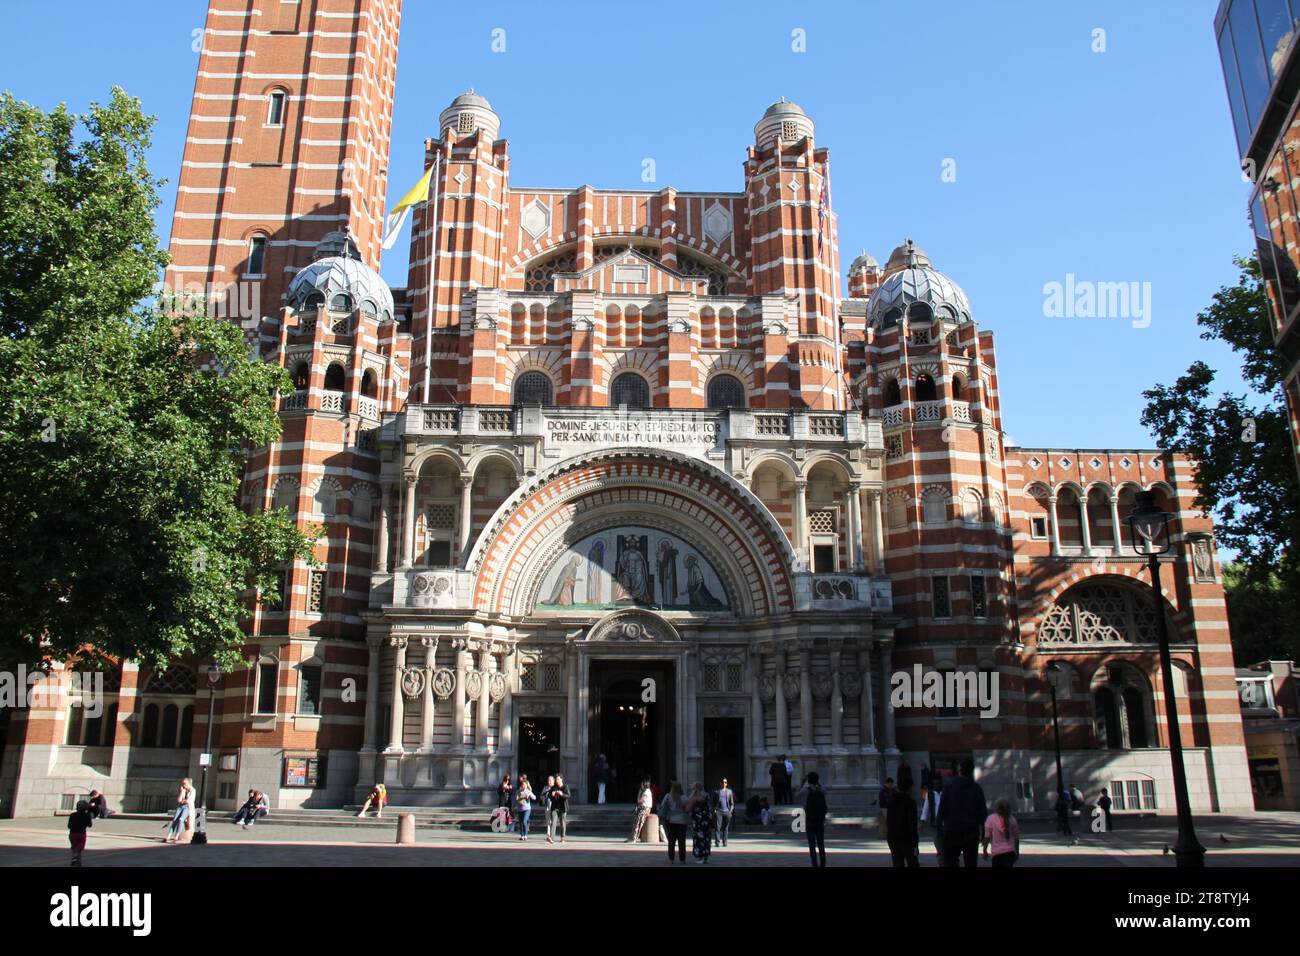 London Westminster Cathedral (Roman Catholic), London, England, UK Stock Photo